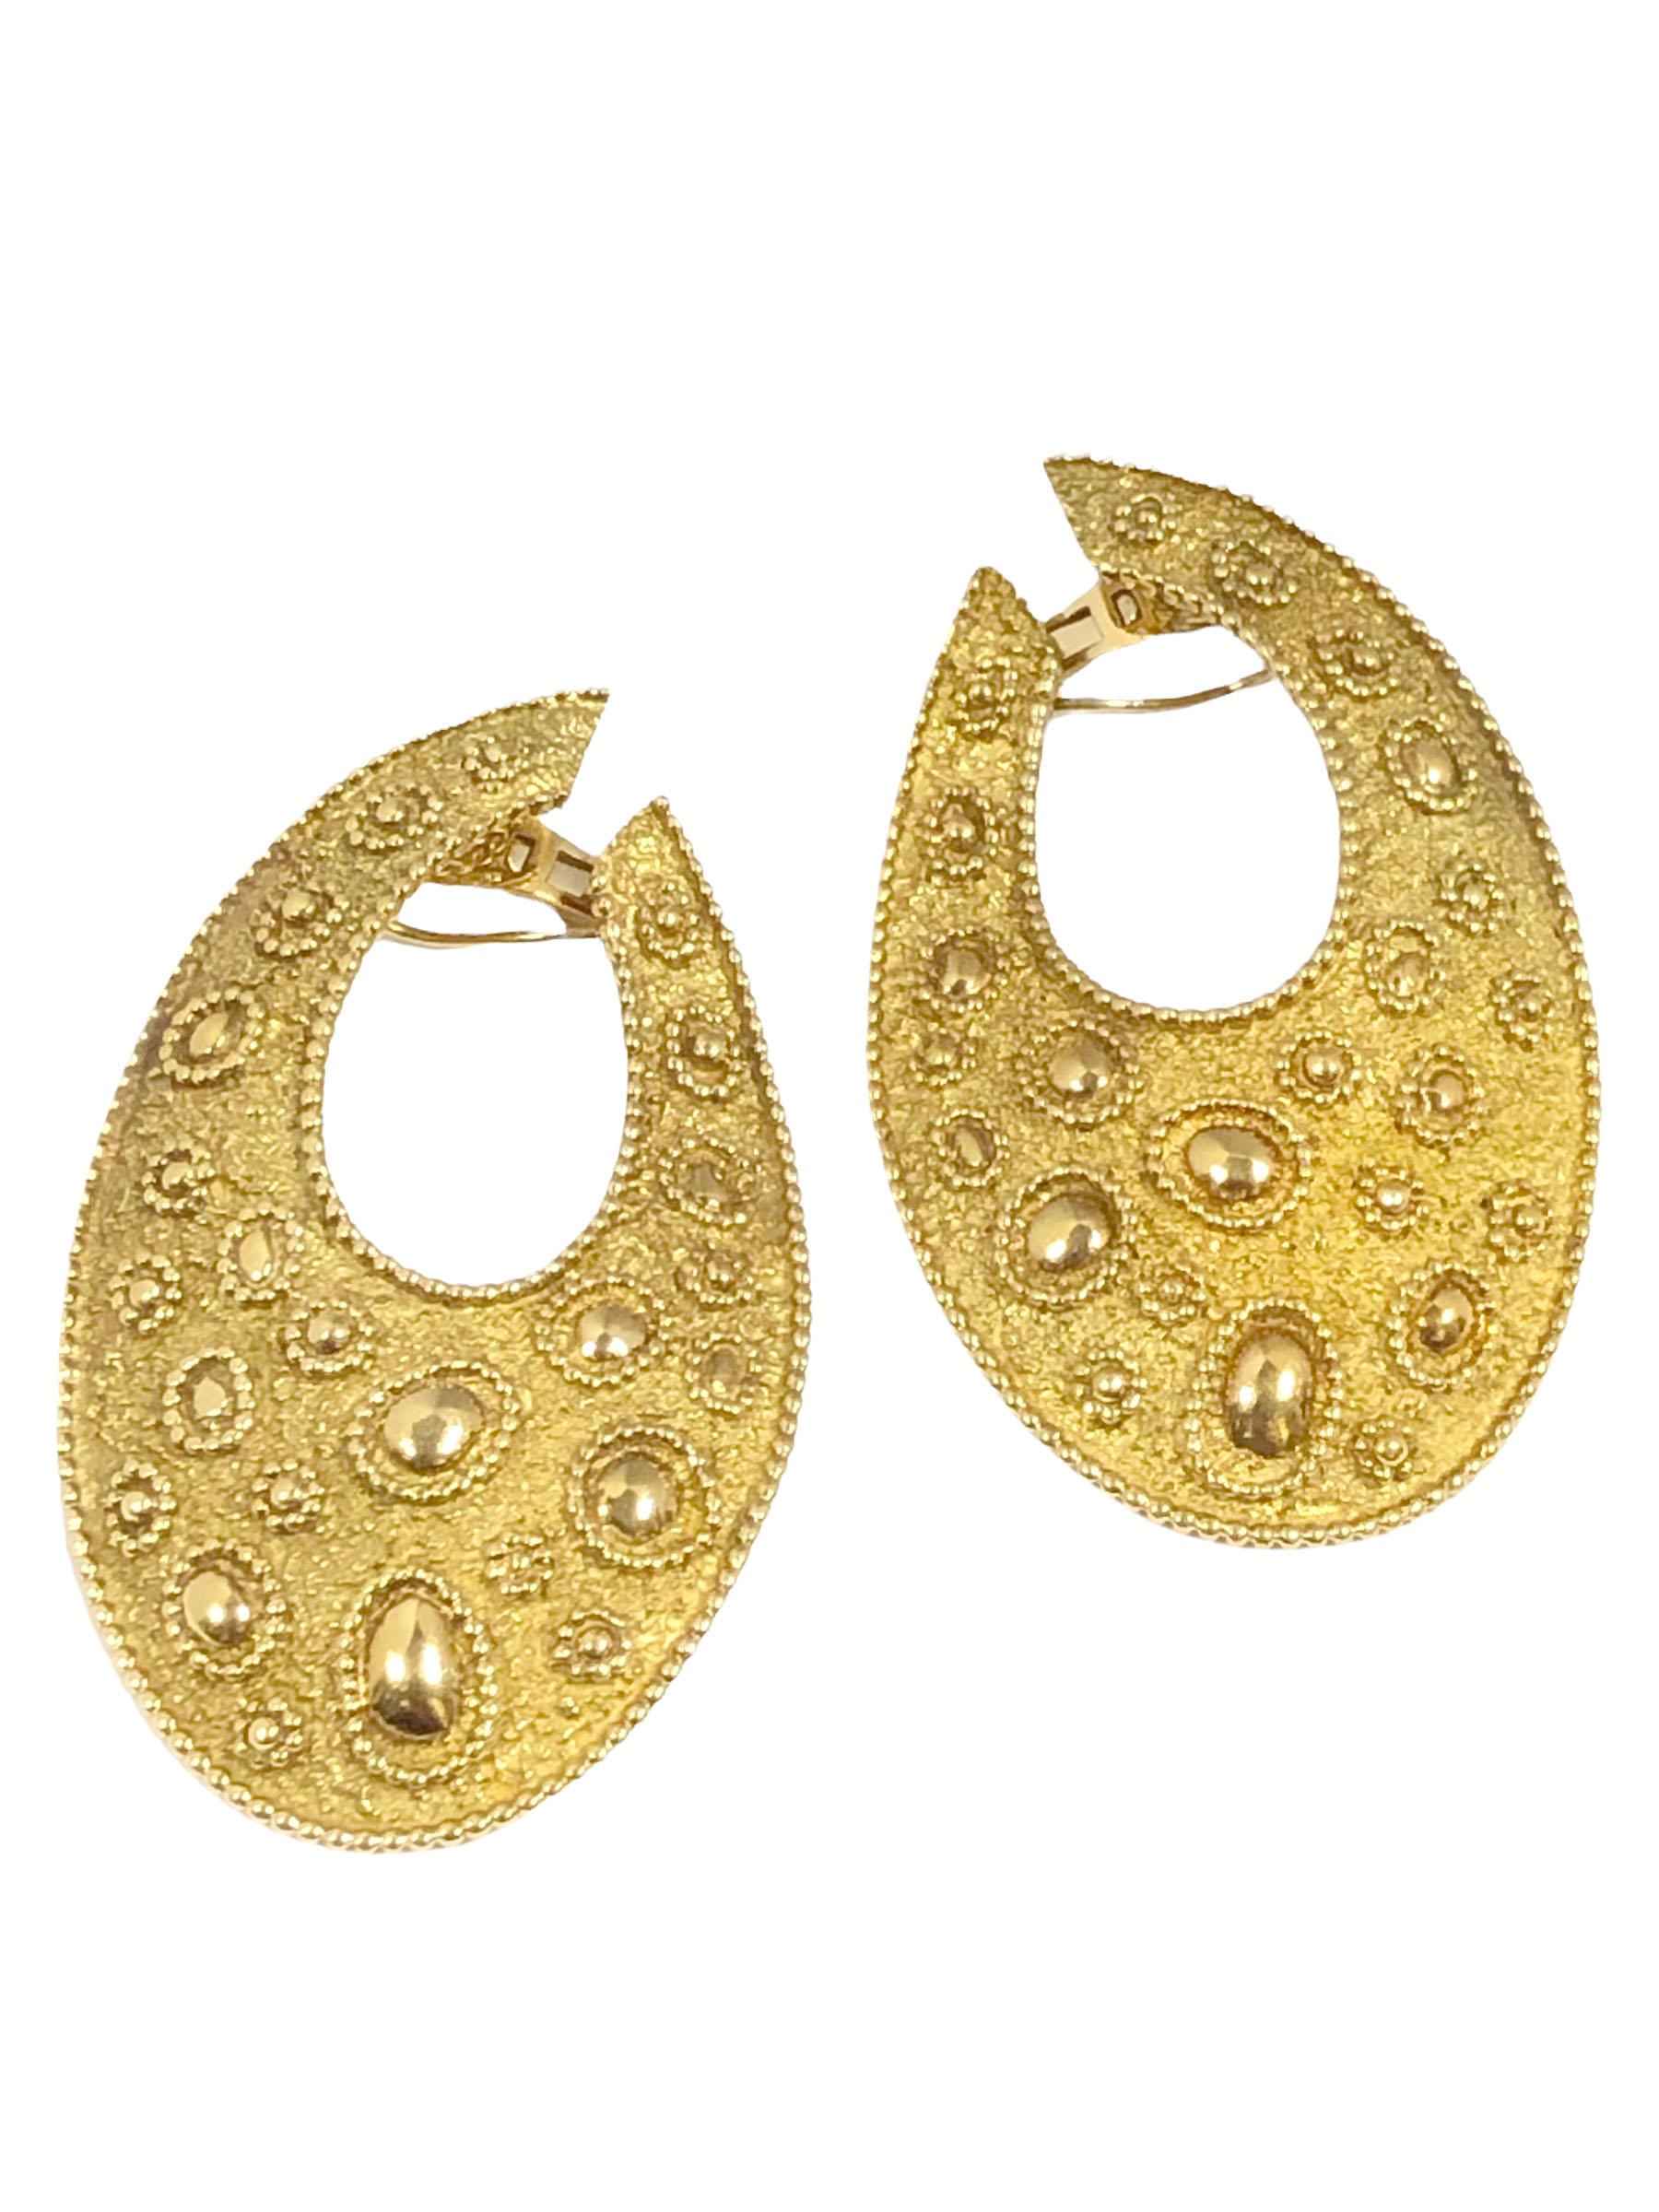 3g gold earrings design